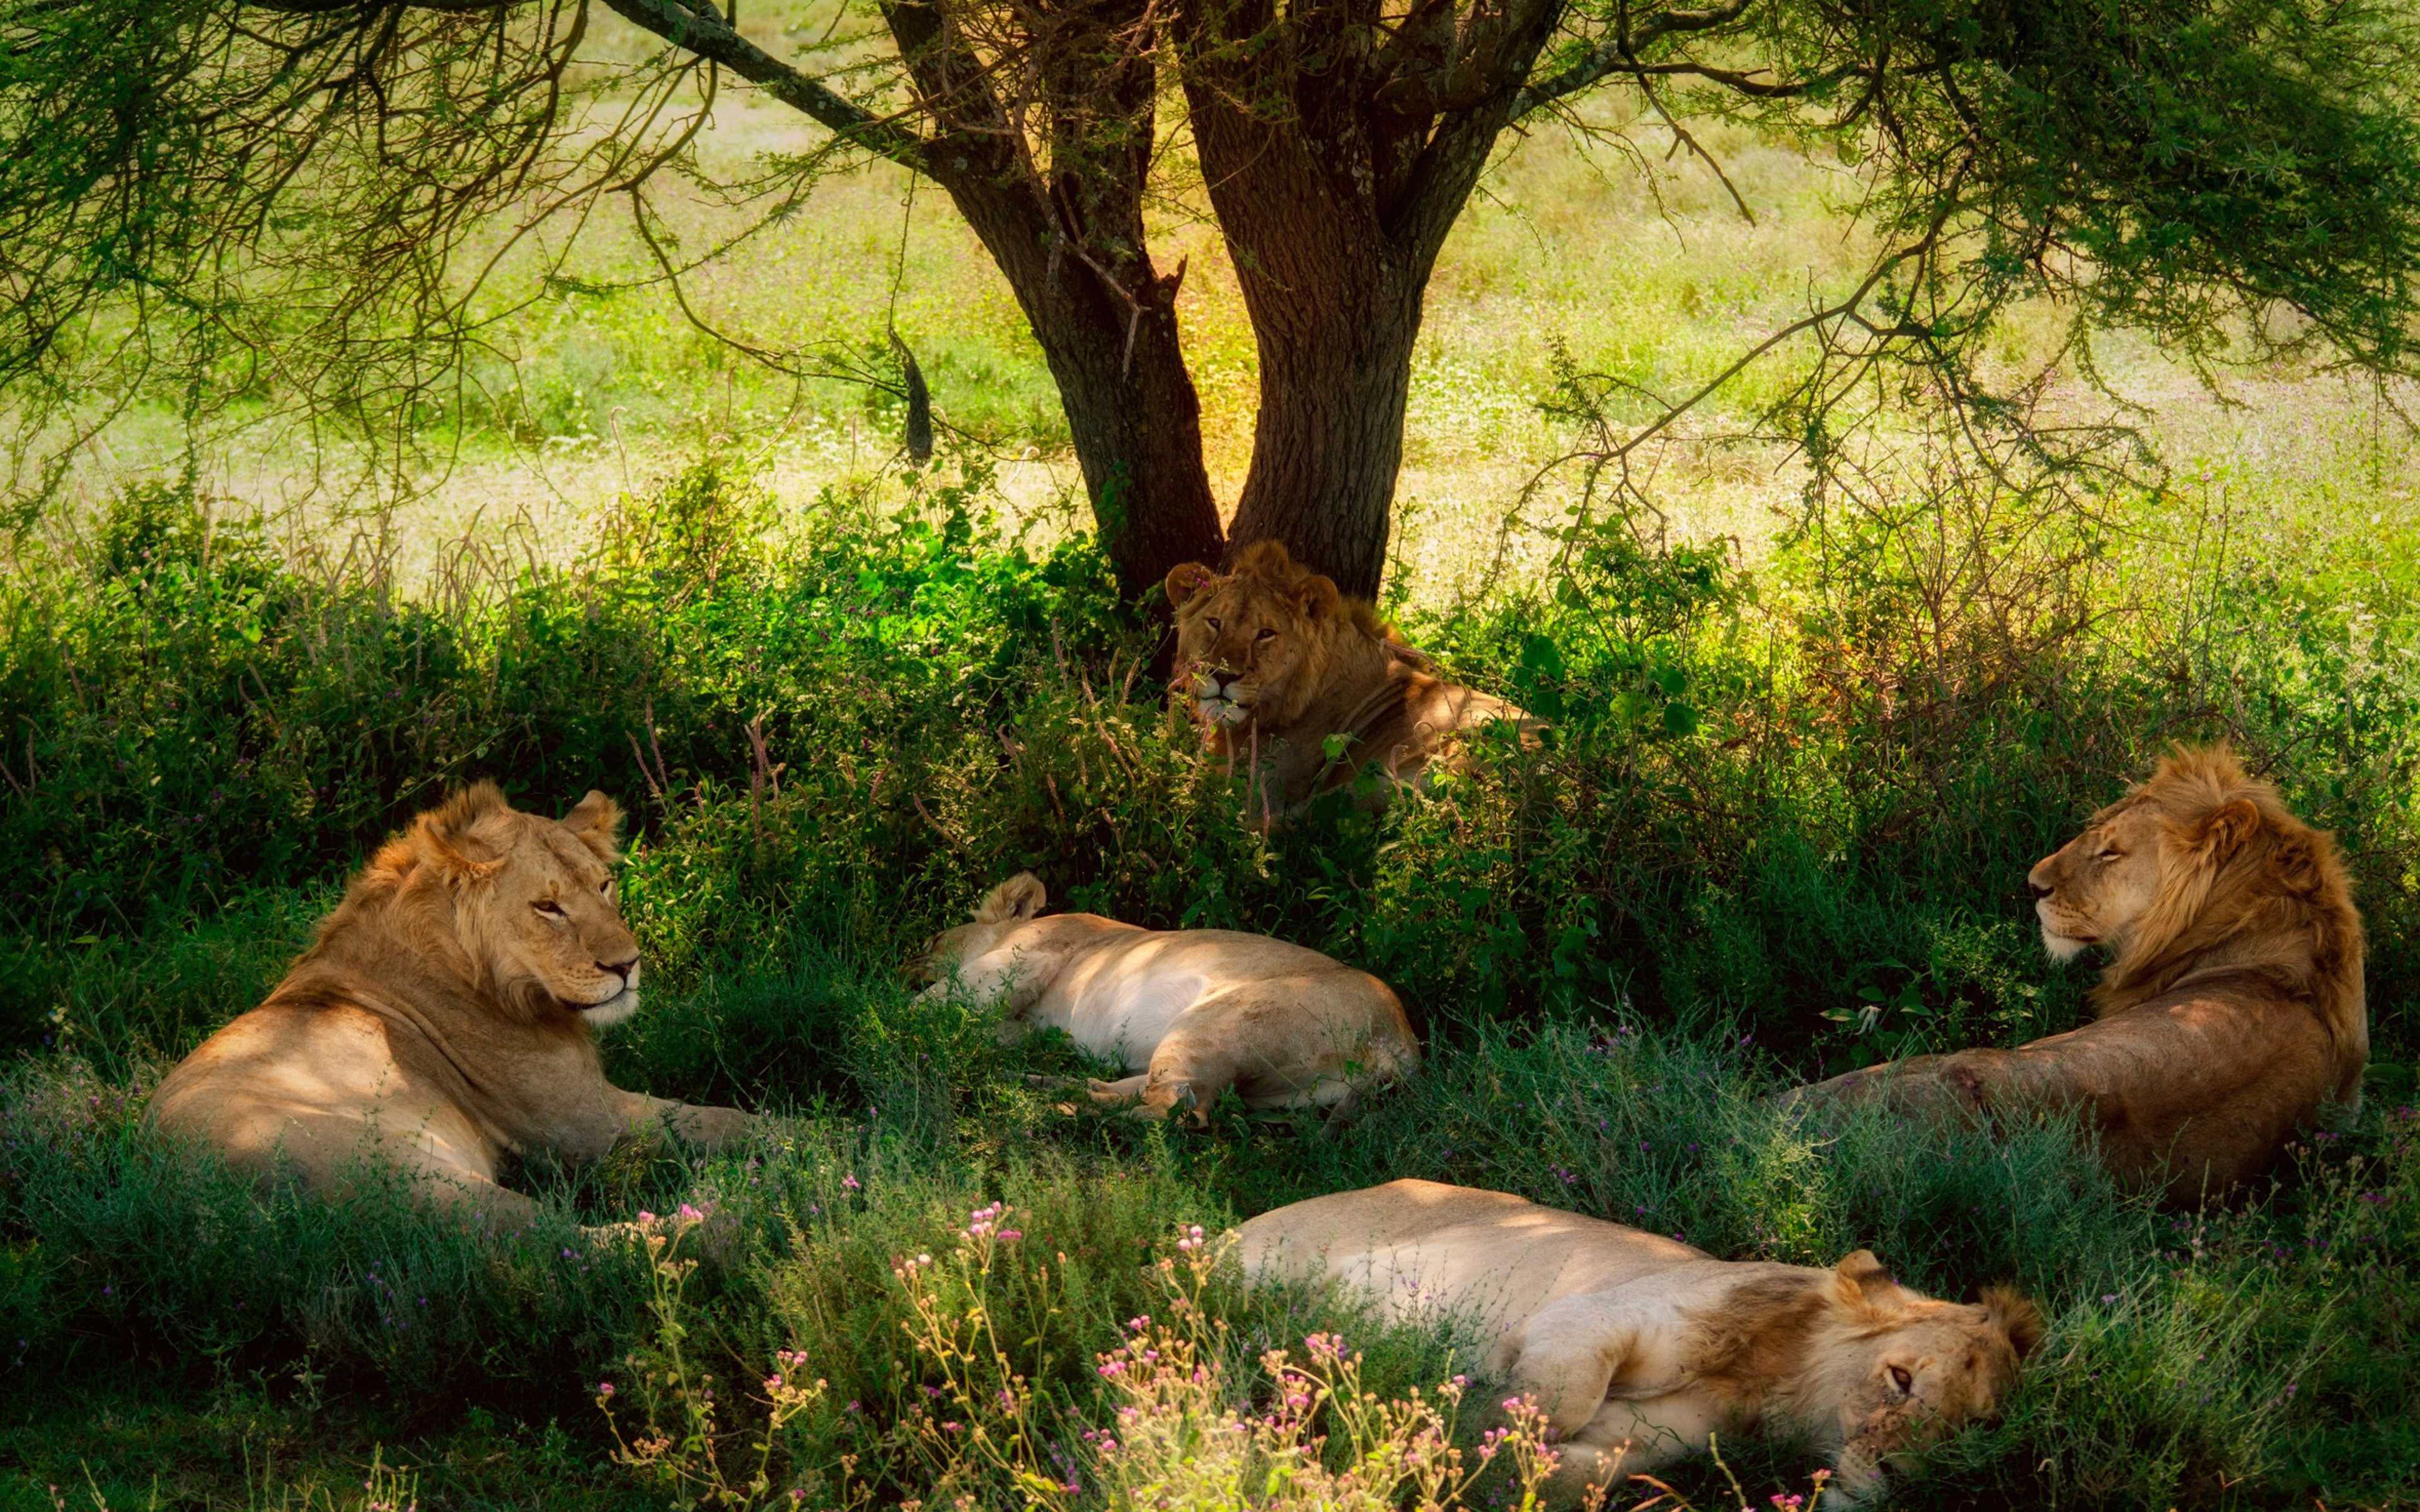 Savanna Africa Lions Tree Shade Grass Hd Wallpaper : Wallpapers13.com